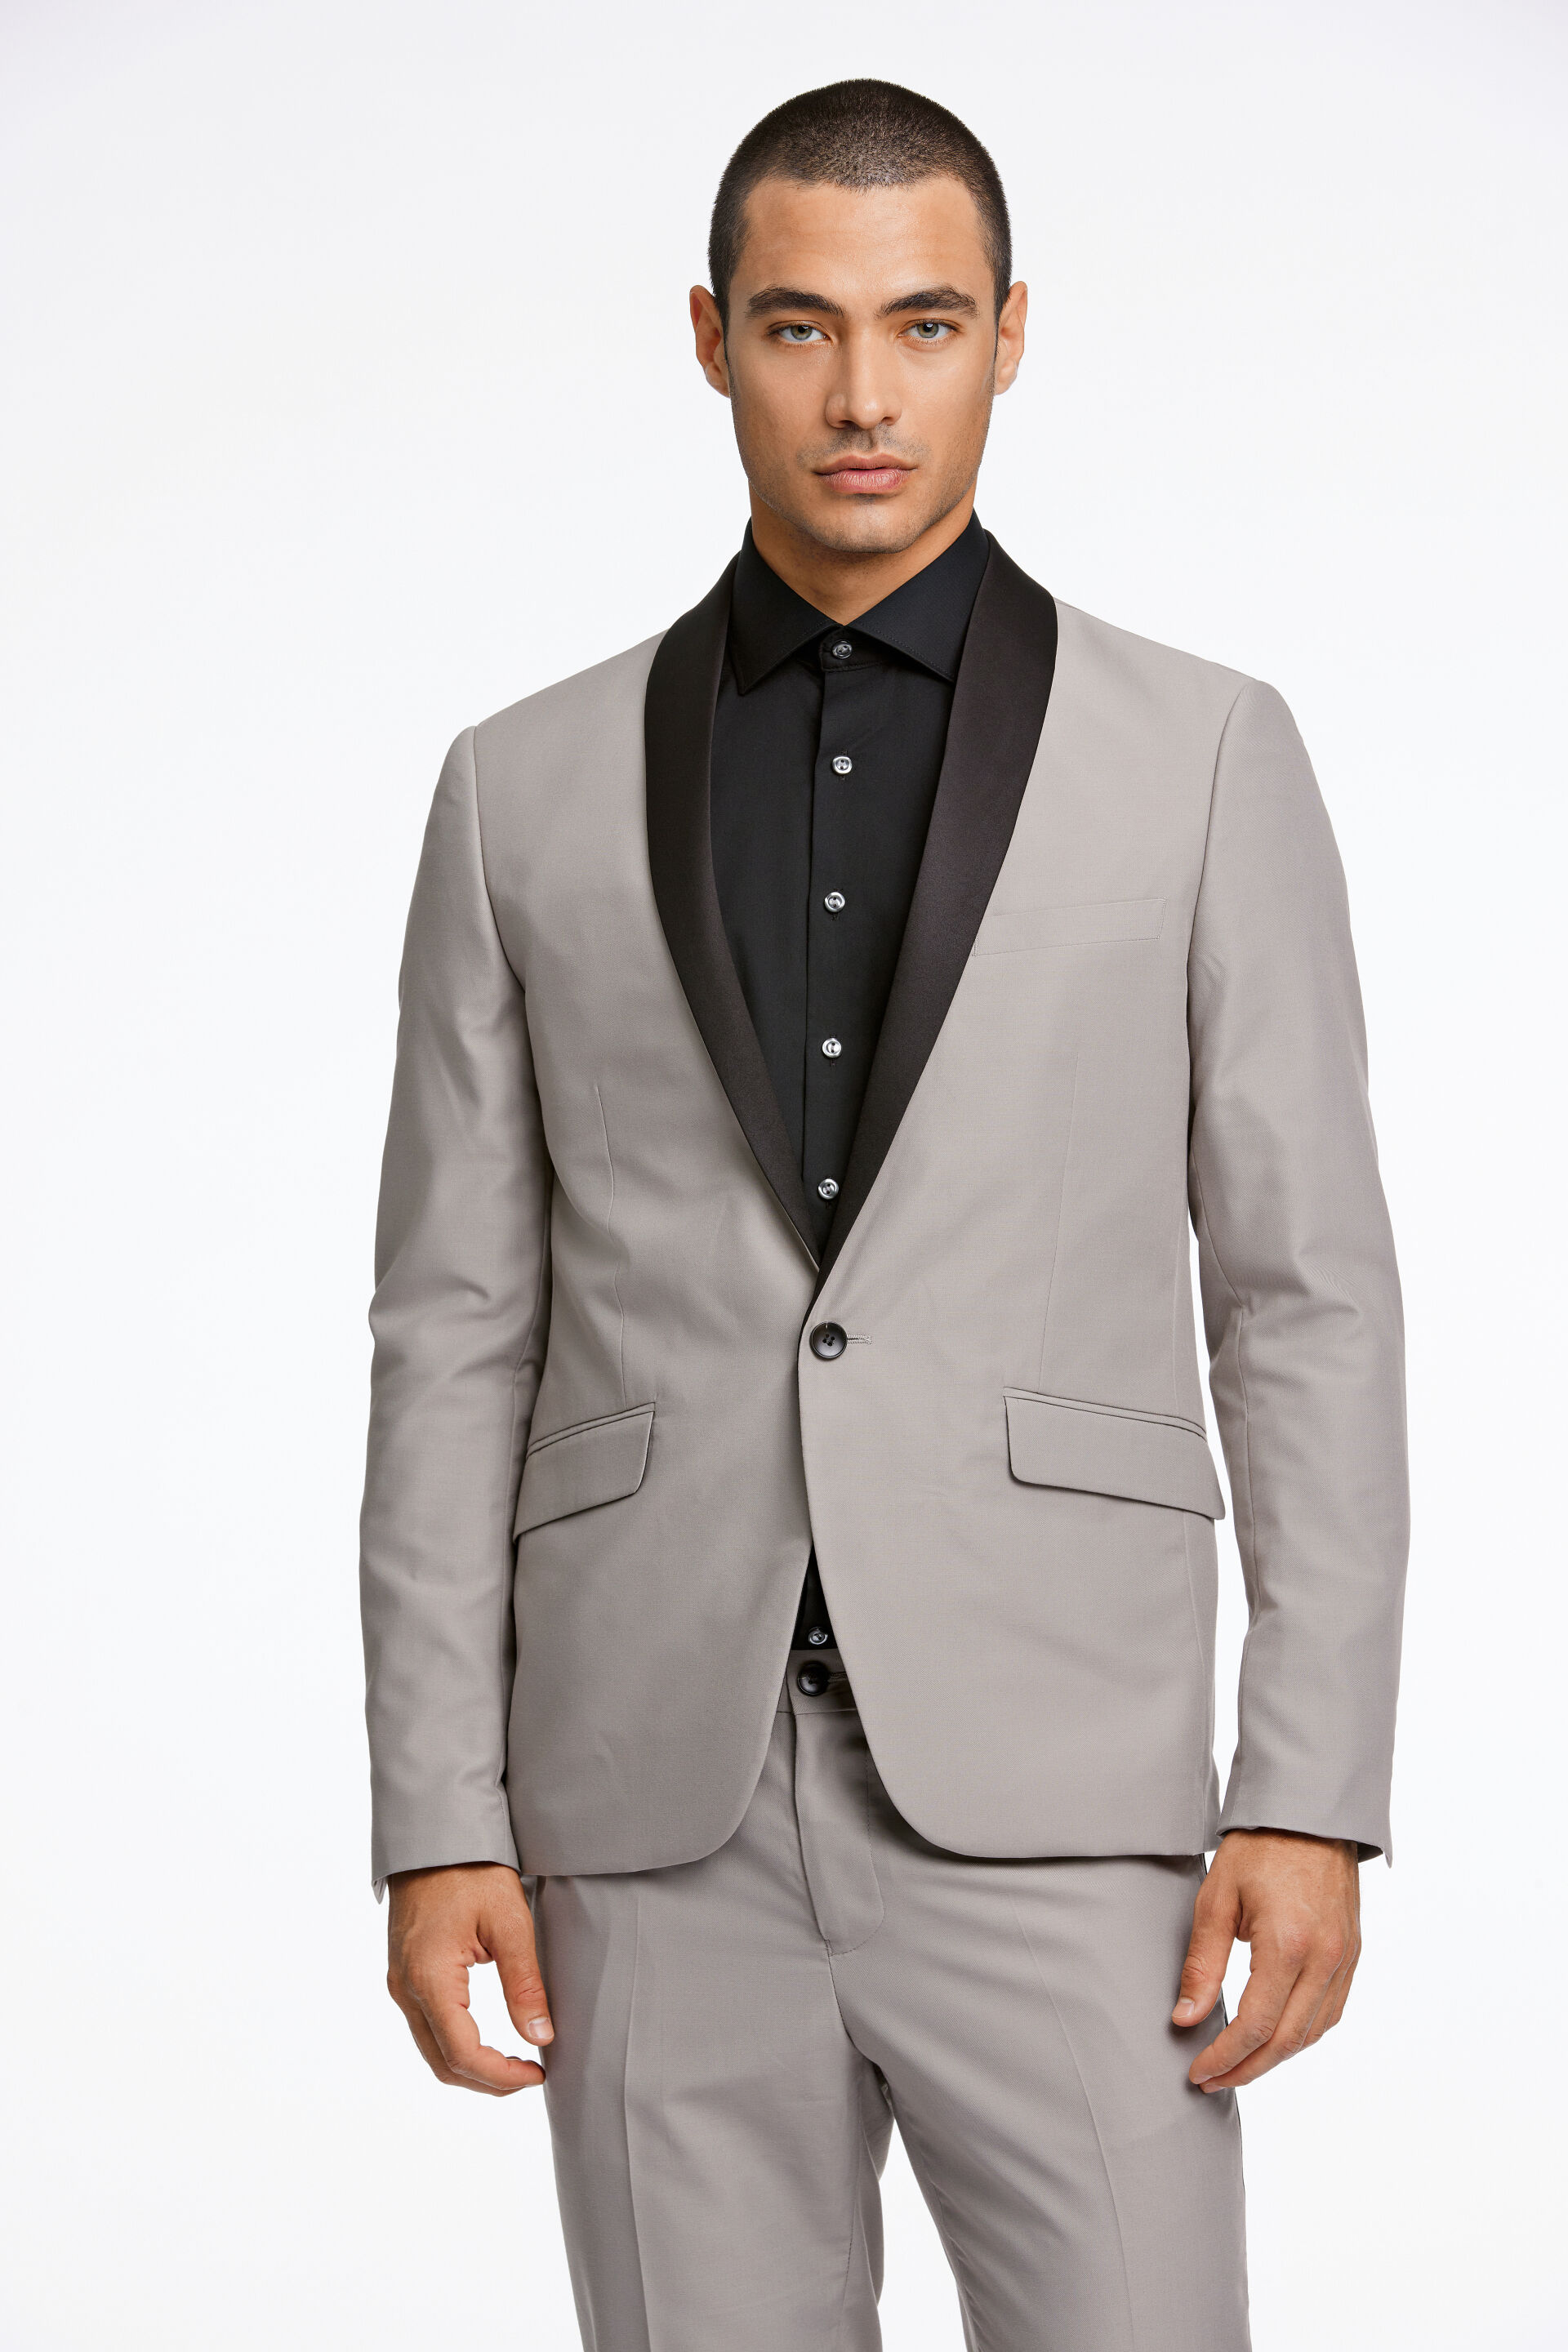 Suit Suit Sand 30-605033